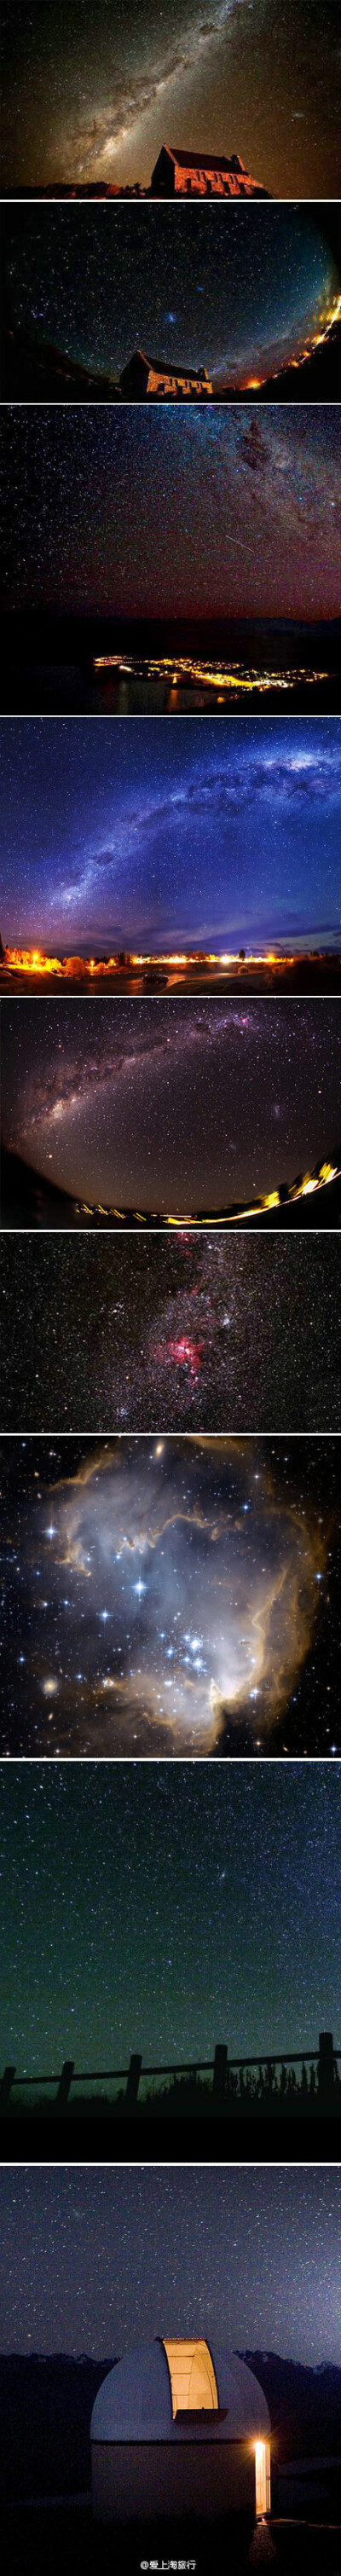 【星空自然保护区，你听说过吗？】这是全世界星空最美的地方——新西兰的小镇特卡波，它将成为世界上第一个“星空自然保护区”。特卡波的夜空静谧而璀璨，银河和大团星座清晰可见，令人仿佛置身于童话世界